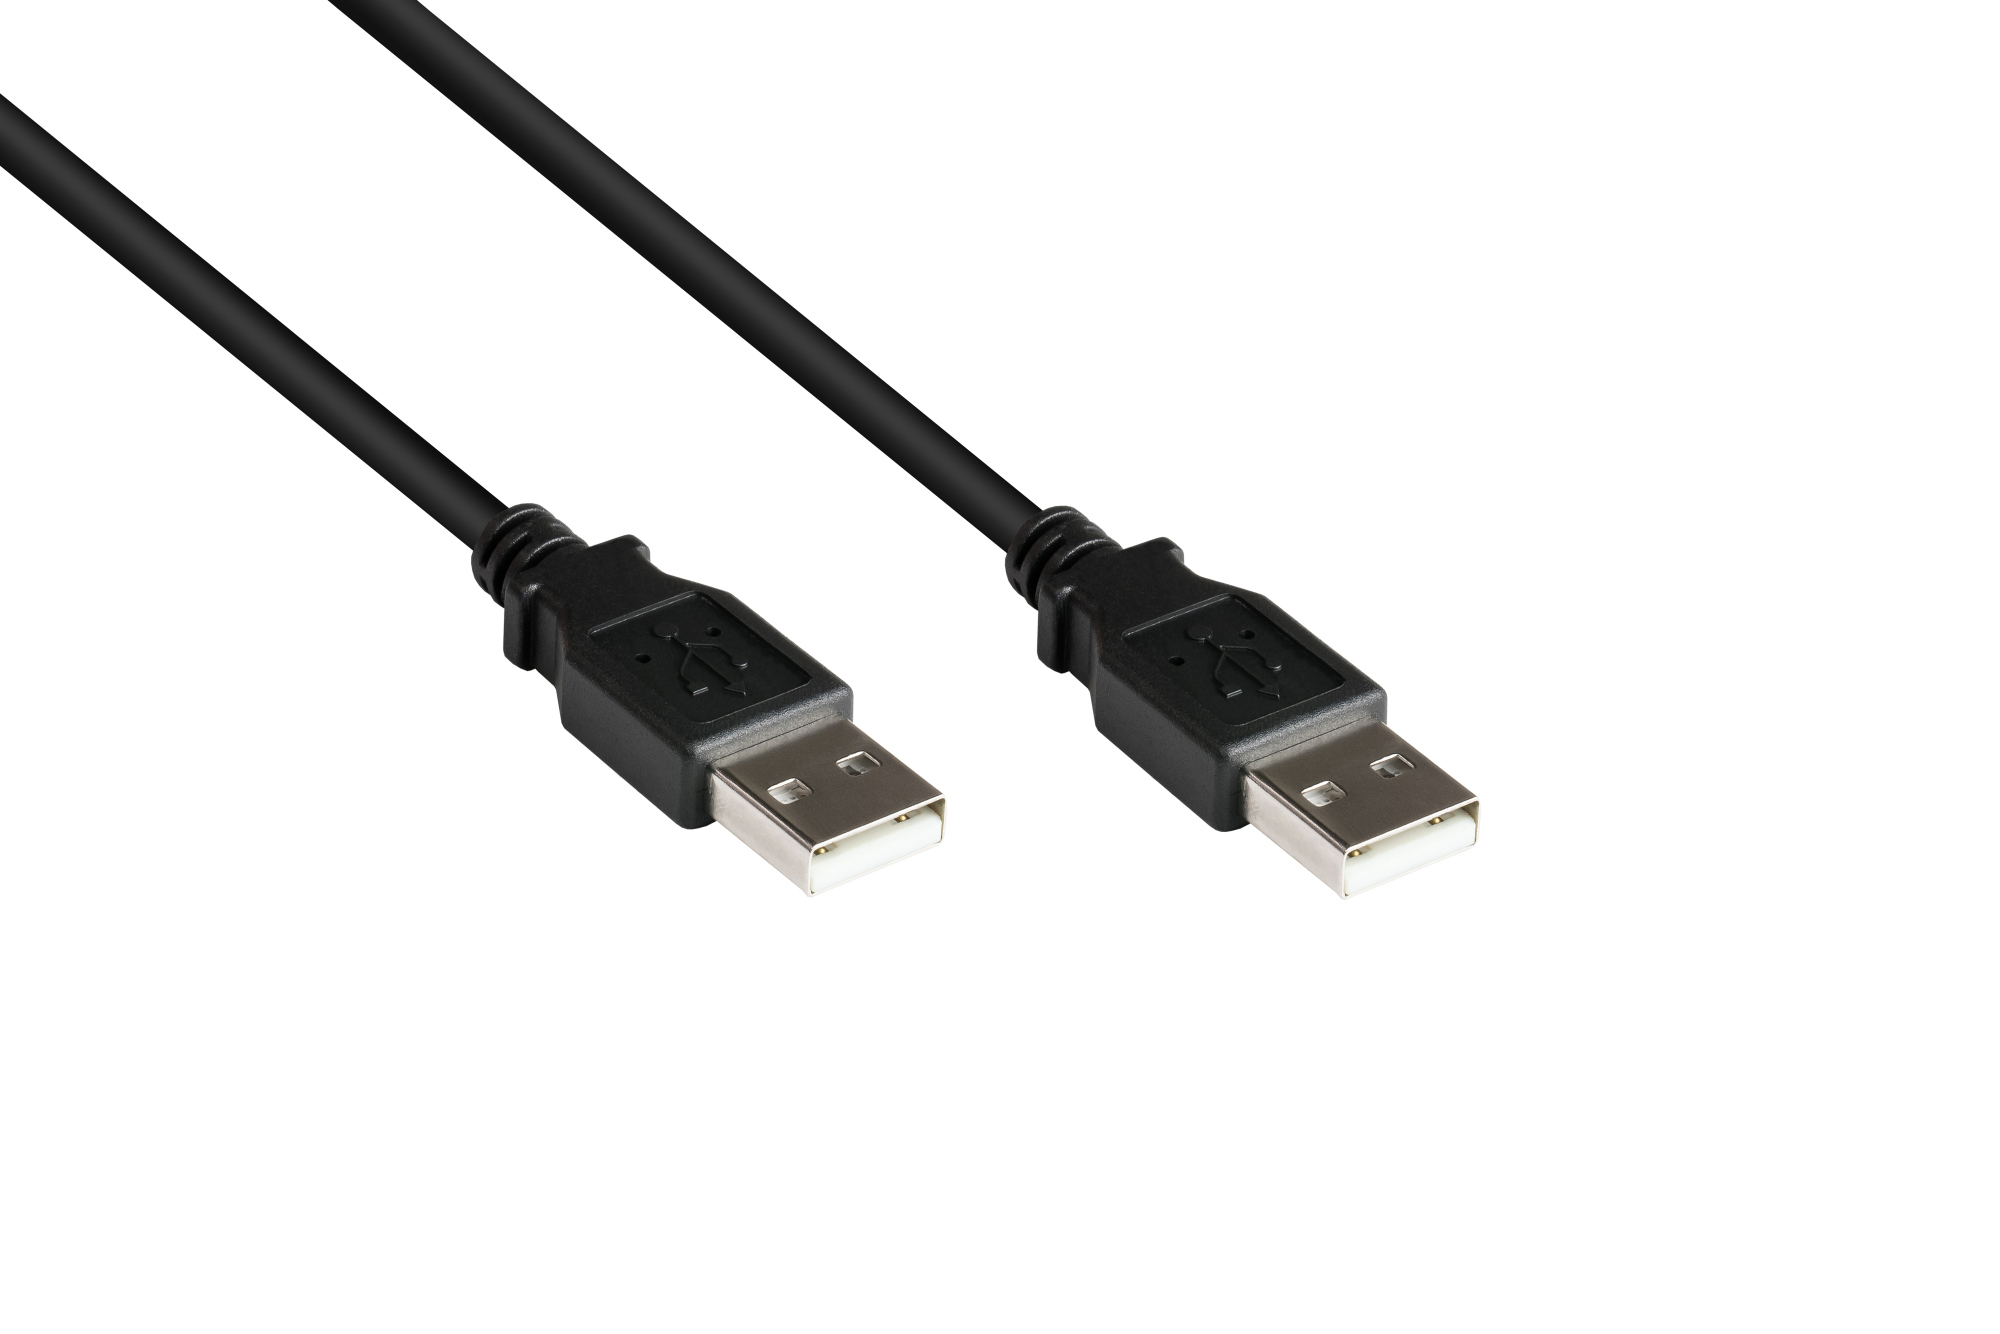 Anschlusskabel USB 2.0 Stecker A an Stecker A, schwarz, 1m, Good Connections®